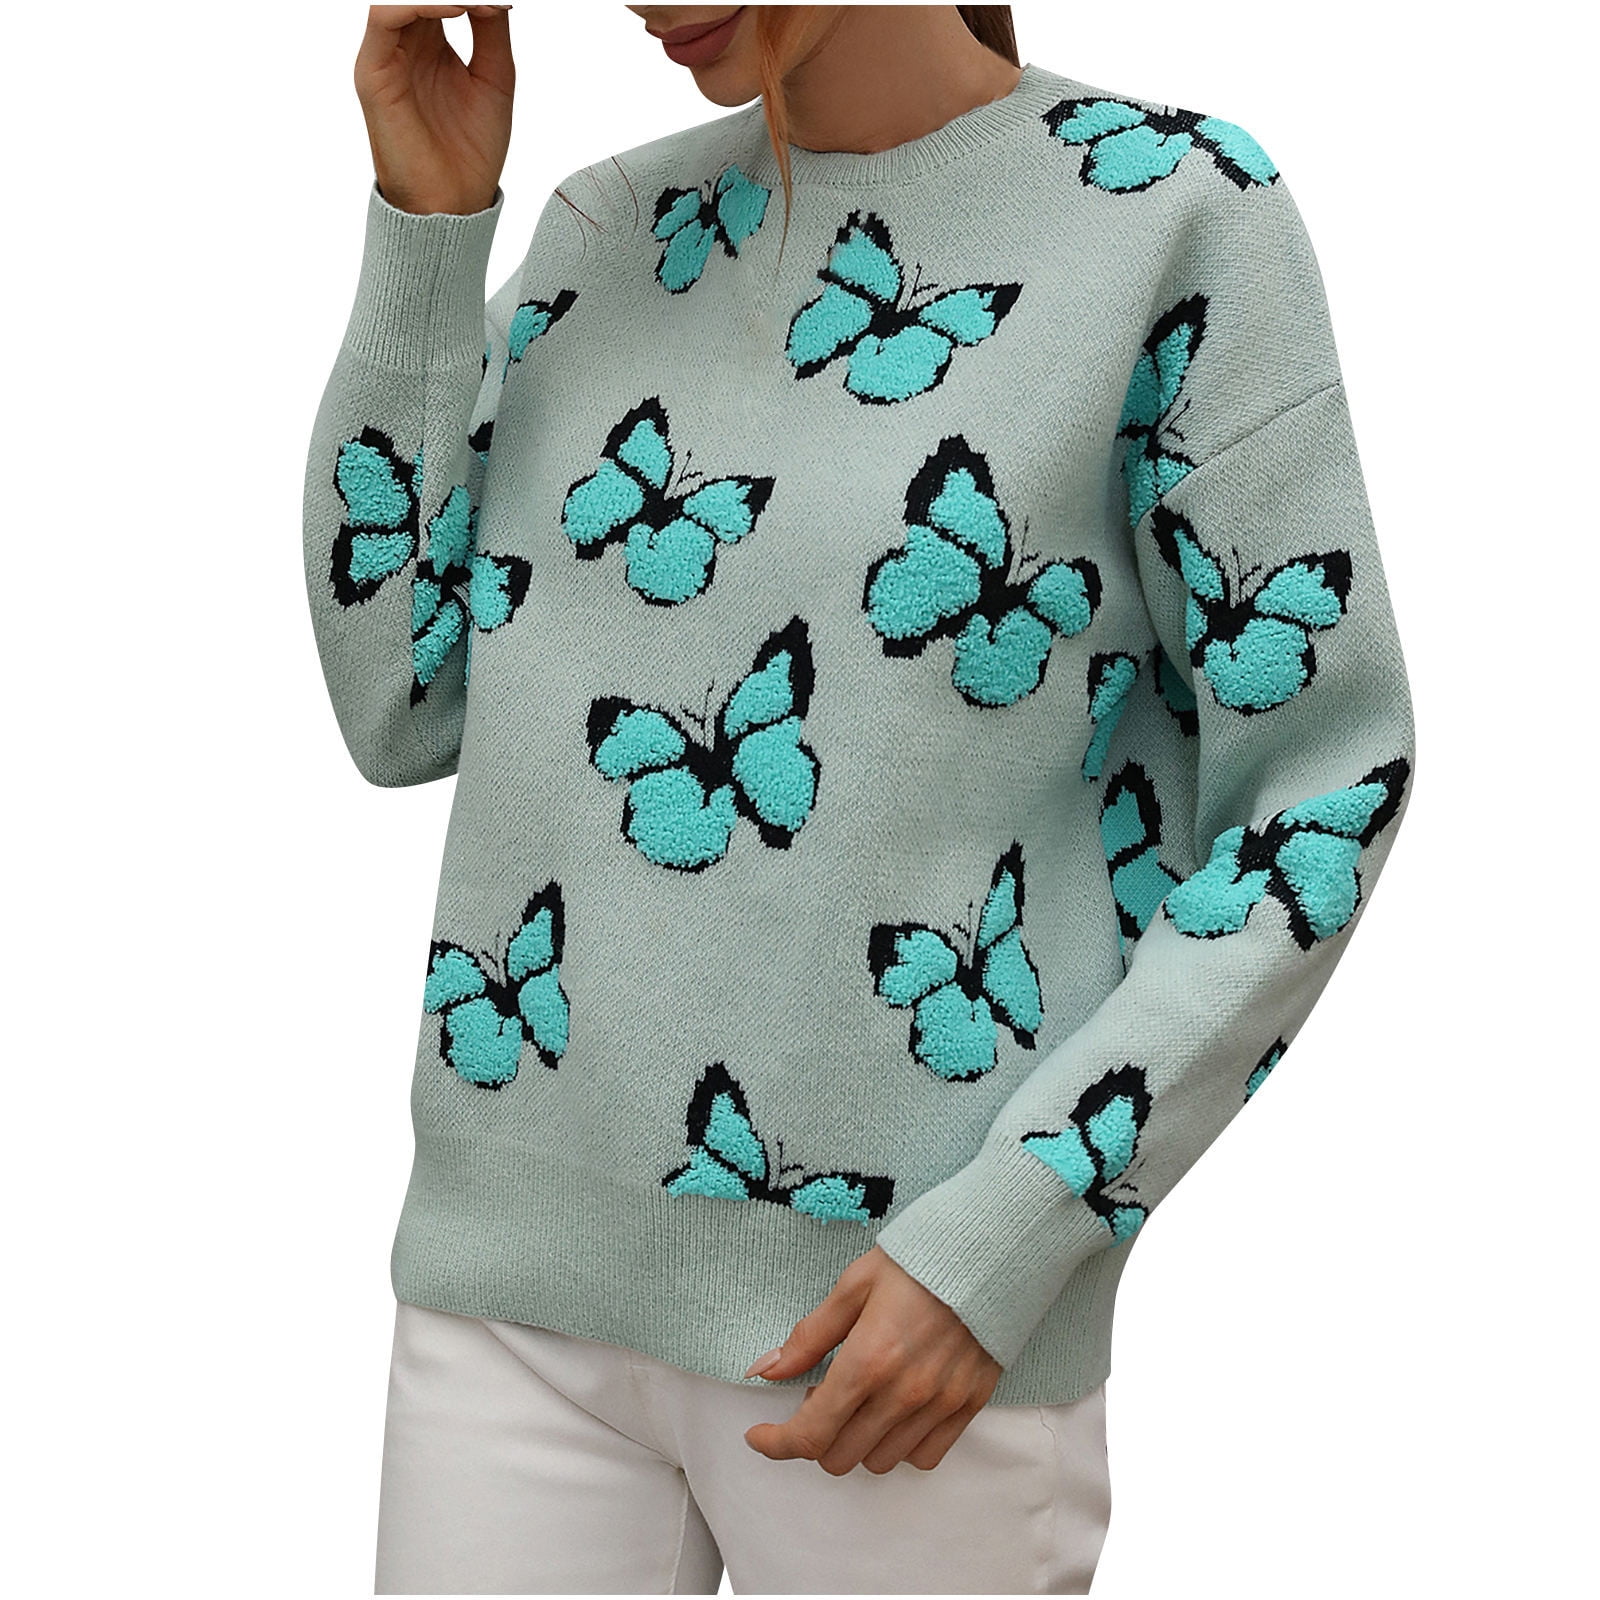 STETMN Women's Knit Sweater Long Sleeve Butterfly Printed Sweater Tops ...